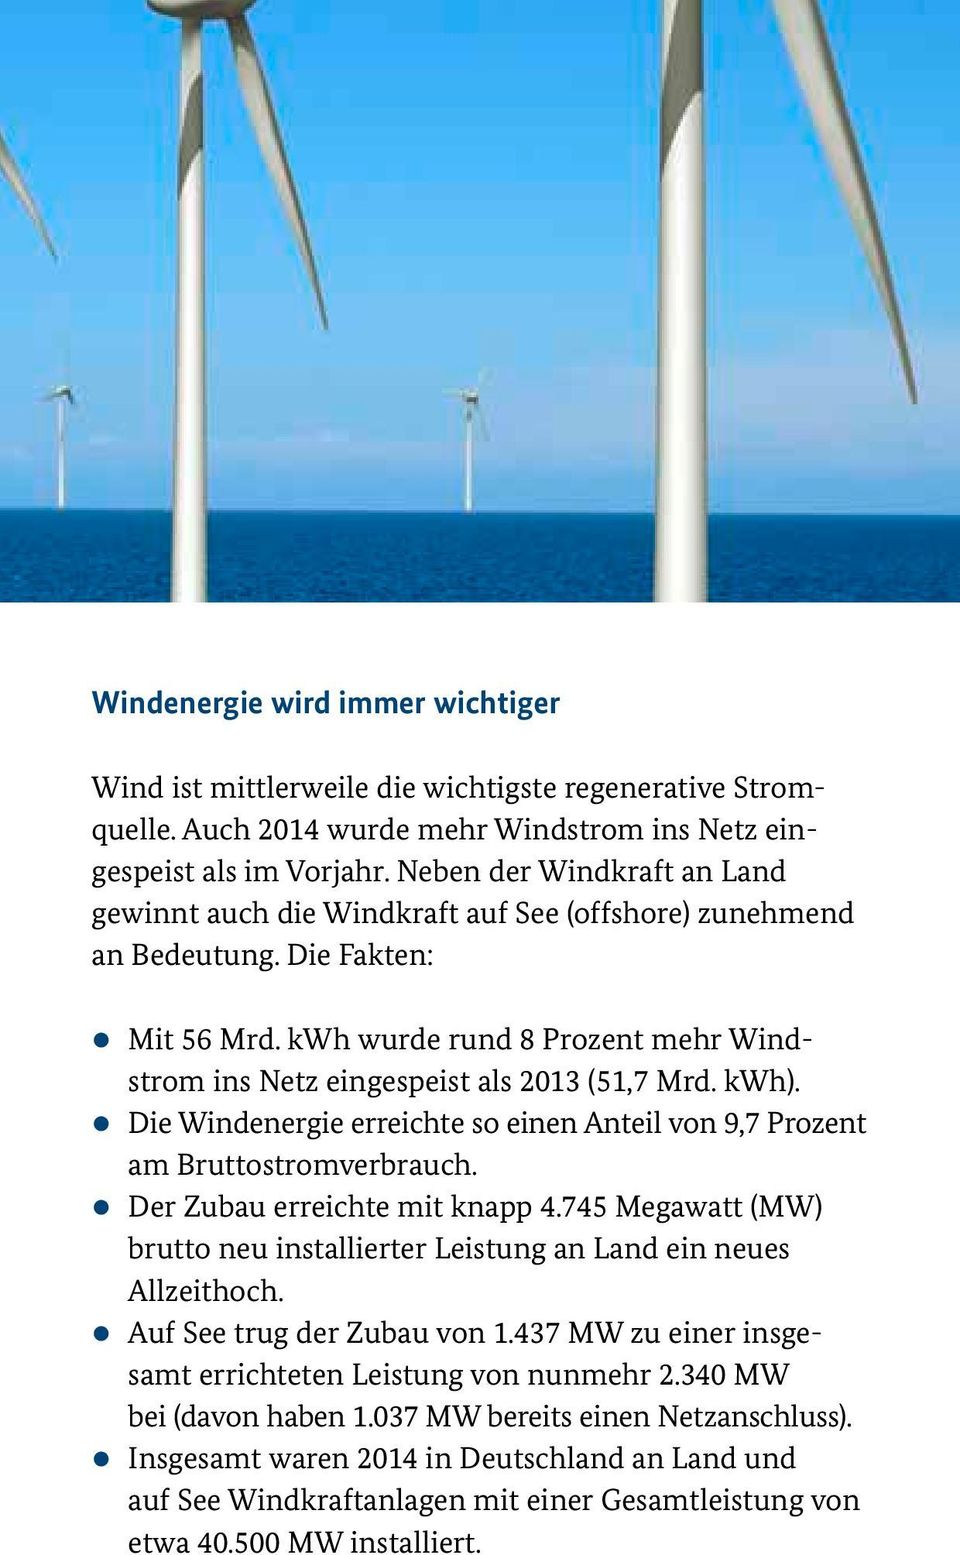 kwh wurde rund 8 Prozent mehr Windstrom ins Netz eingespeist als 2013 (51,7 Mrd. kwh). zdie Windenergie erreichte so einen Anteil von 9,7 Prozent am Bruttostromverbrauch.